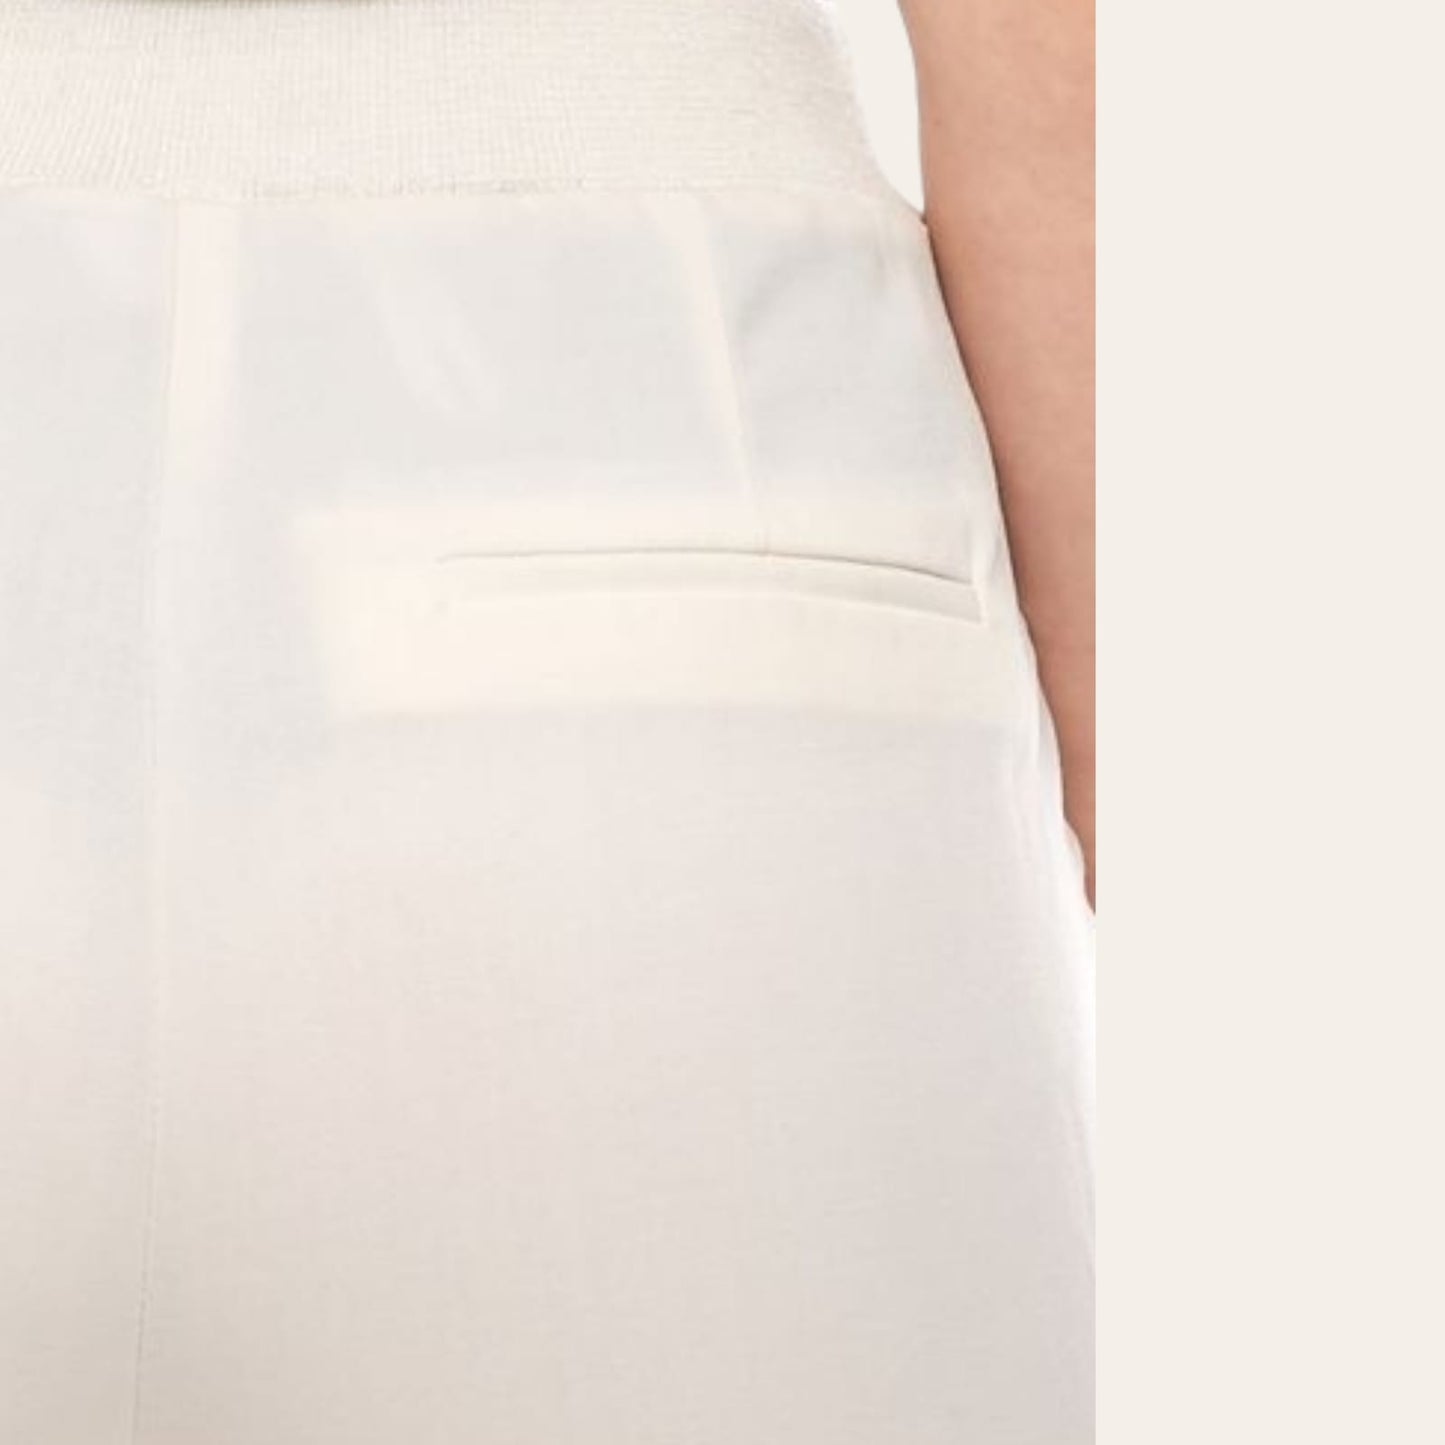 PantallonaPantallona Laura Scott #AnistonPantallona Laura Scott vjen me një model vërtet të veçant. Të lirshme, me rrip beli dhe buzë të kthyera në këmbën e pantallonave. Xhepa anash dhe dekorativ me tuba n